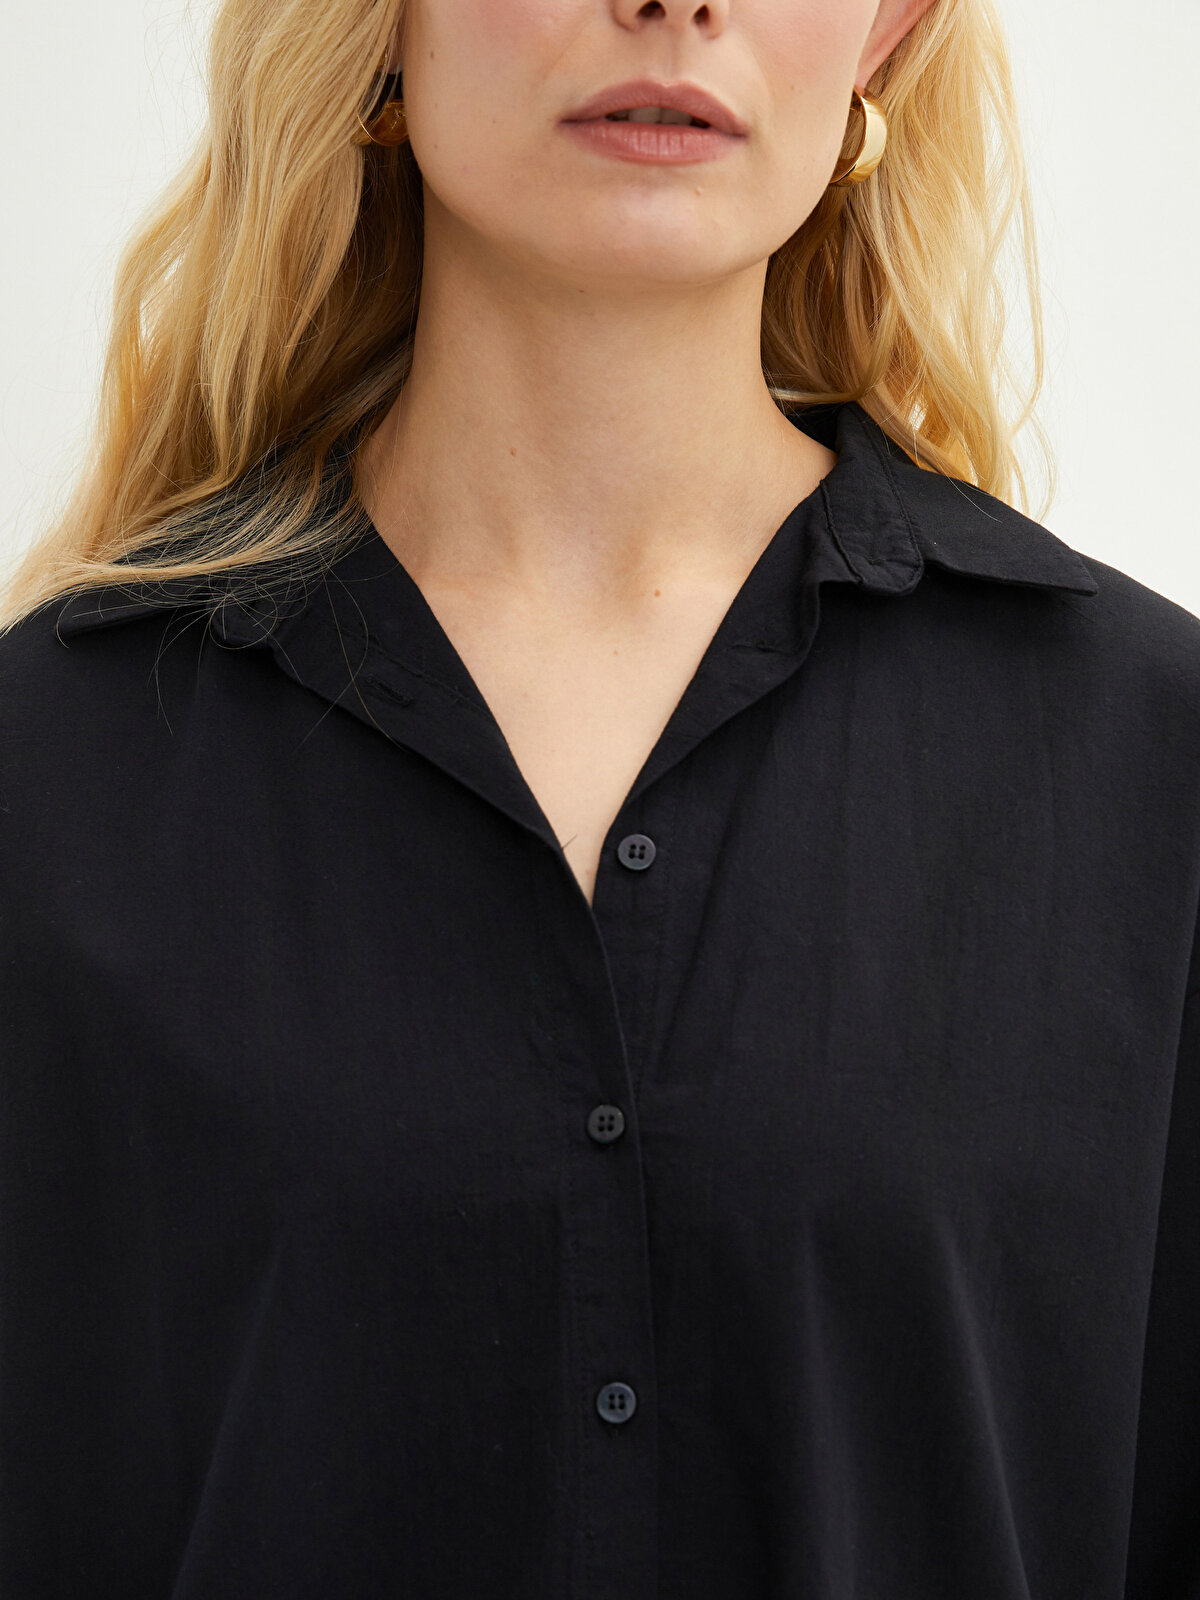 Siyah Önden Düğme Kapamalı Düz Uzun Kollu Poplin Kadın Gömlek